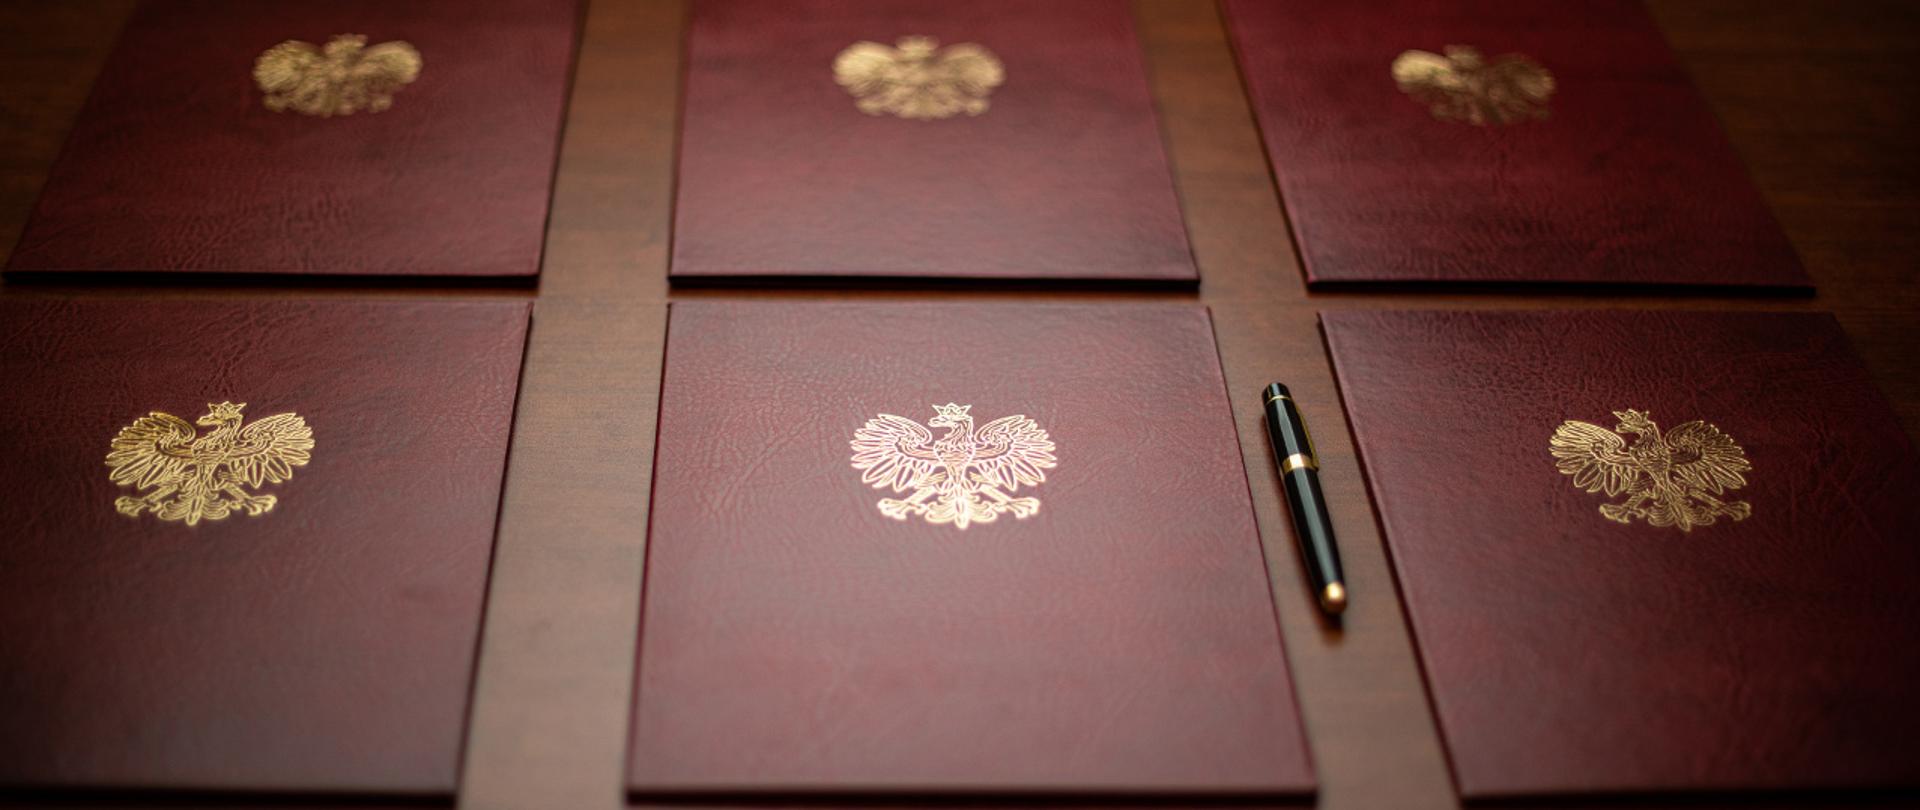 Na zdjęciu widać sześć ułożonych twardych okładek na dokumenty z wytłoczonym orłem z godła narodowego. Obok jednej z teczek leży eleganckie pióro do pisania.